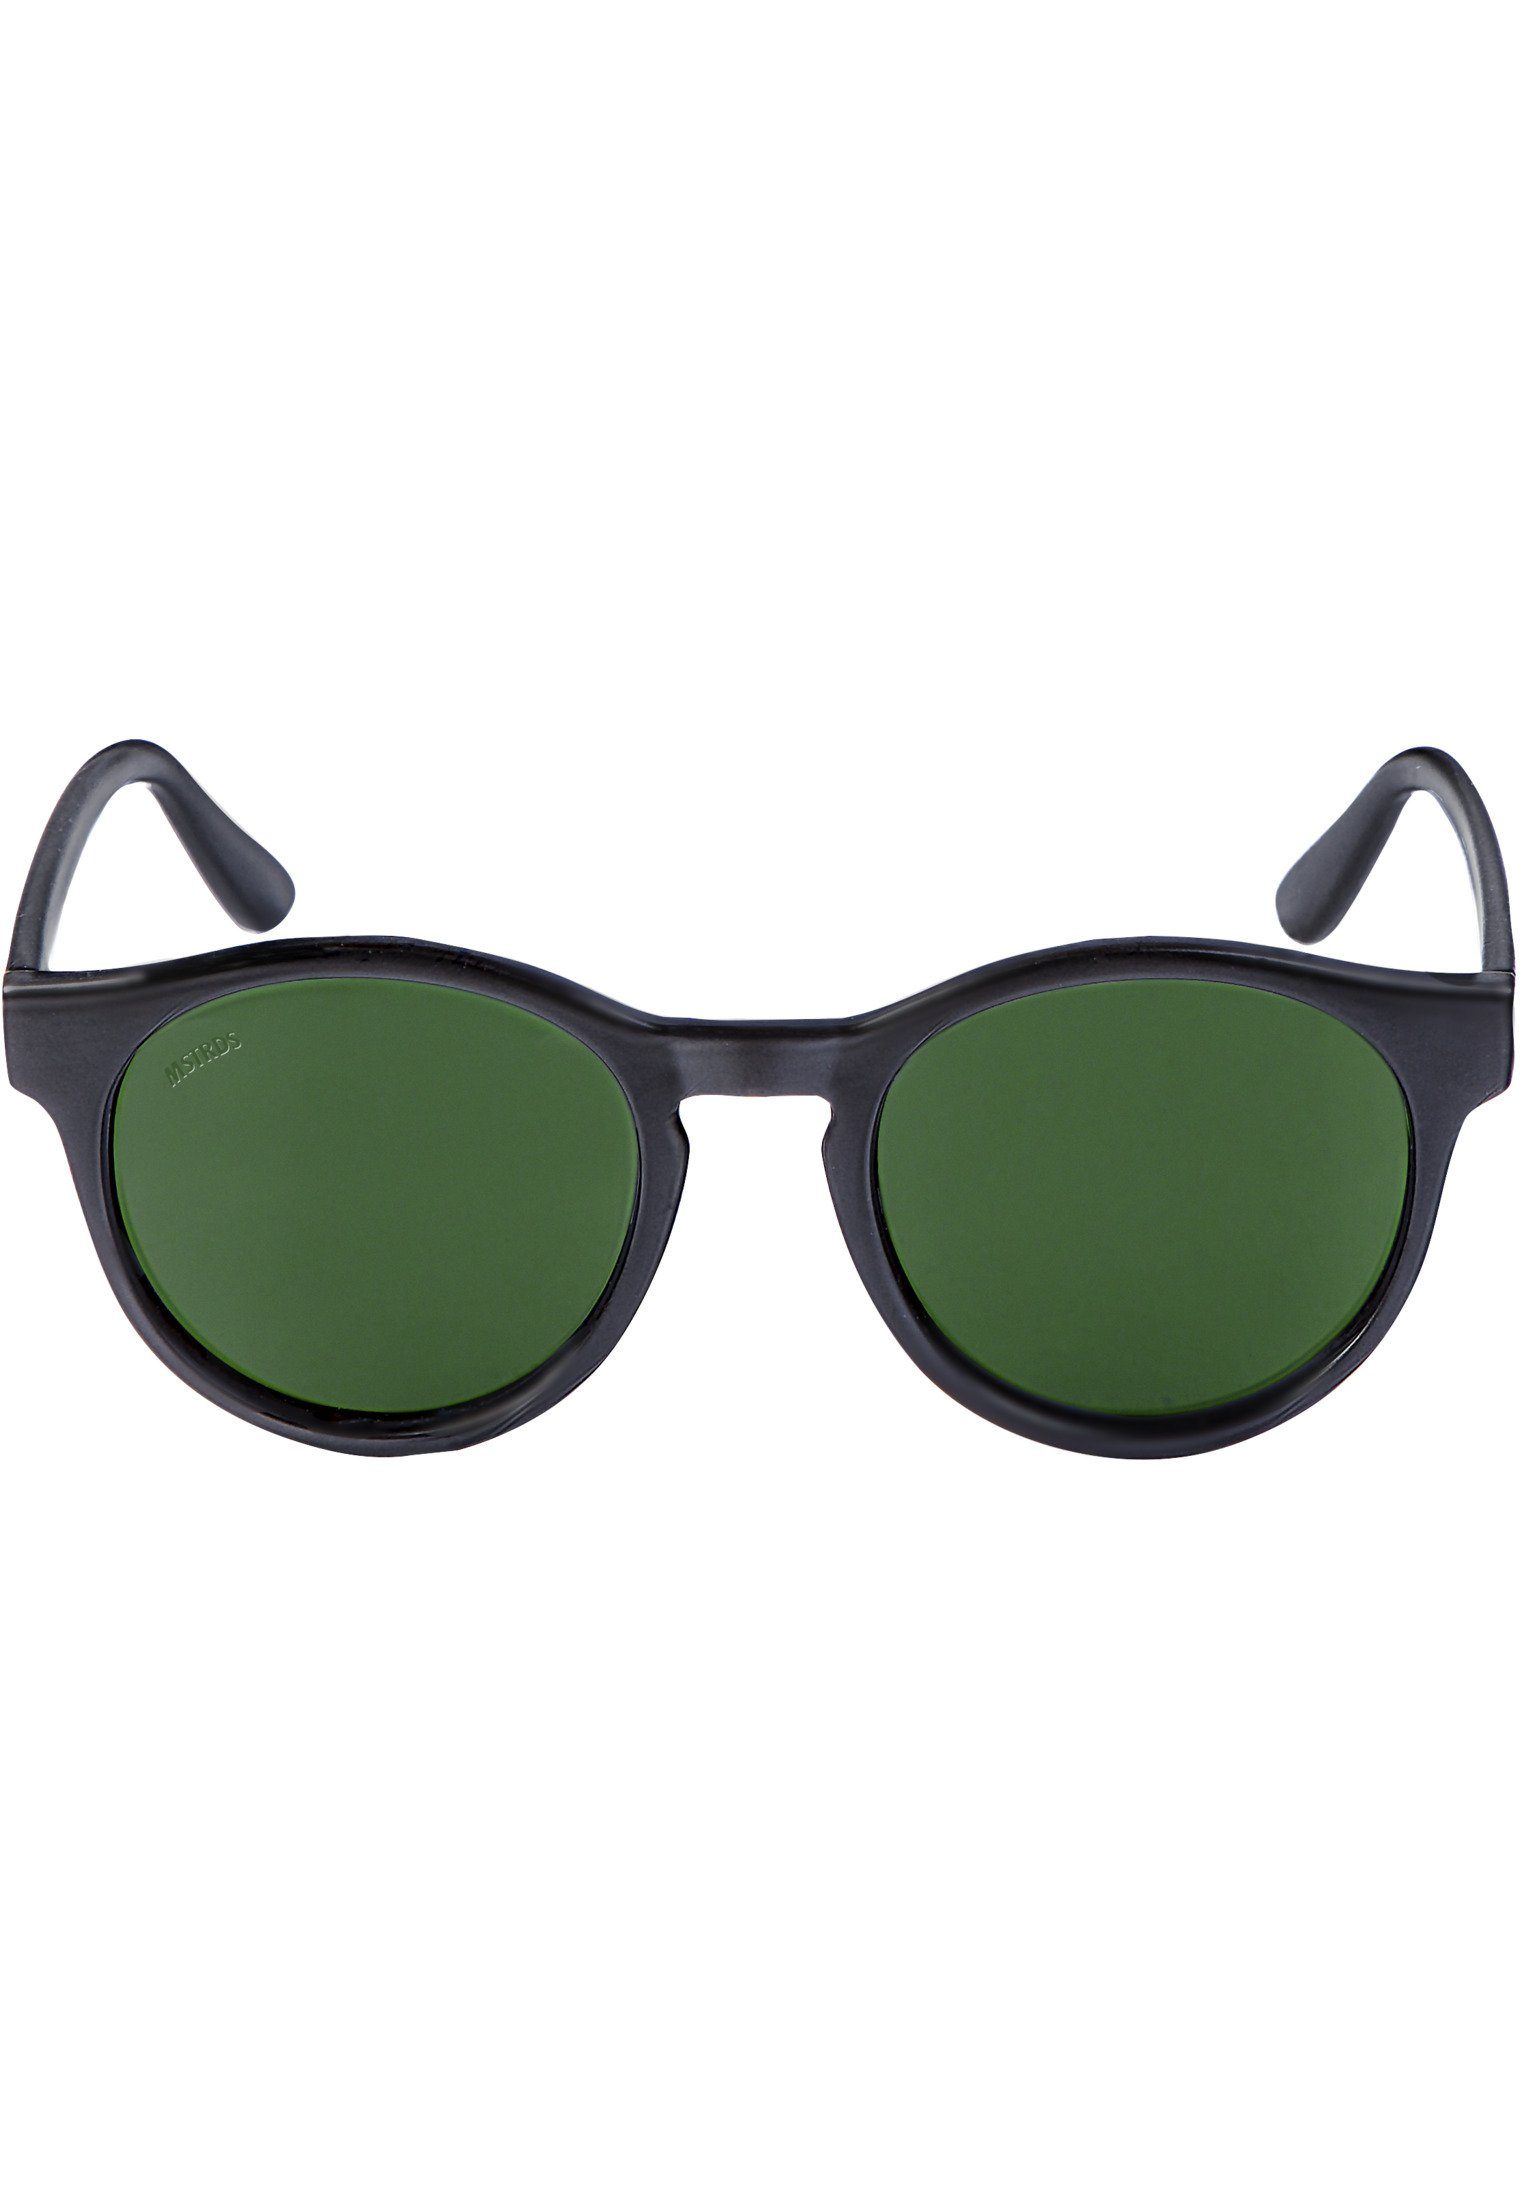 Accessoires Sunglasses Sunrise blk/grn Sonnenbrille MSTRDS